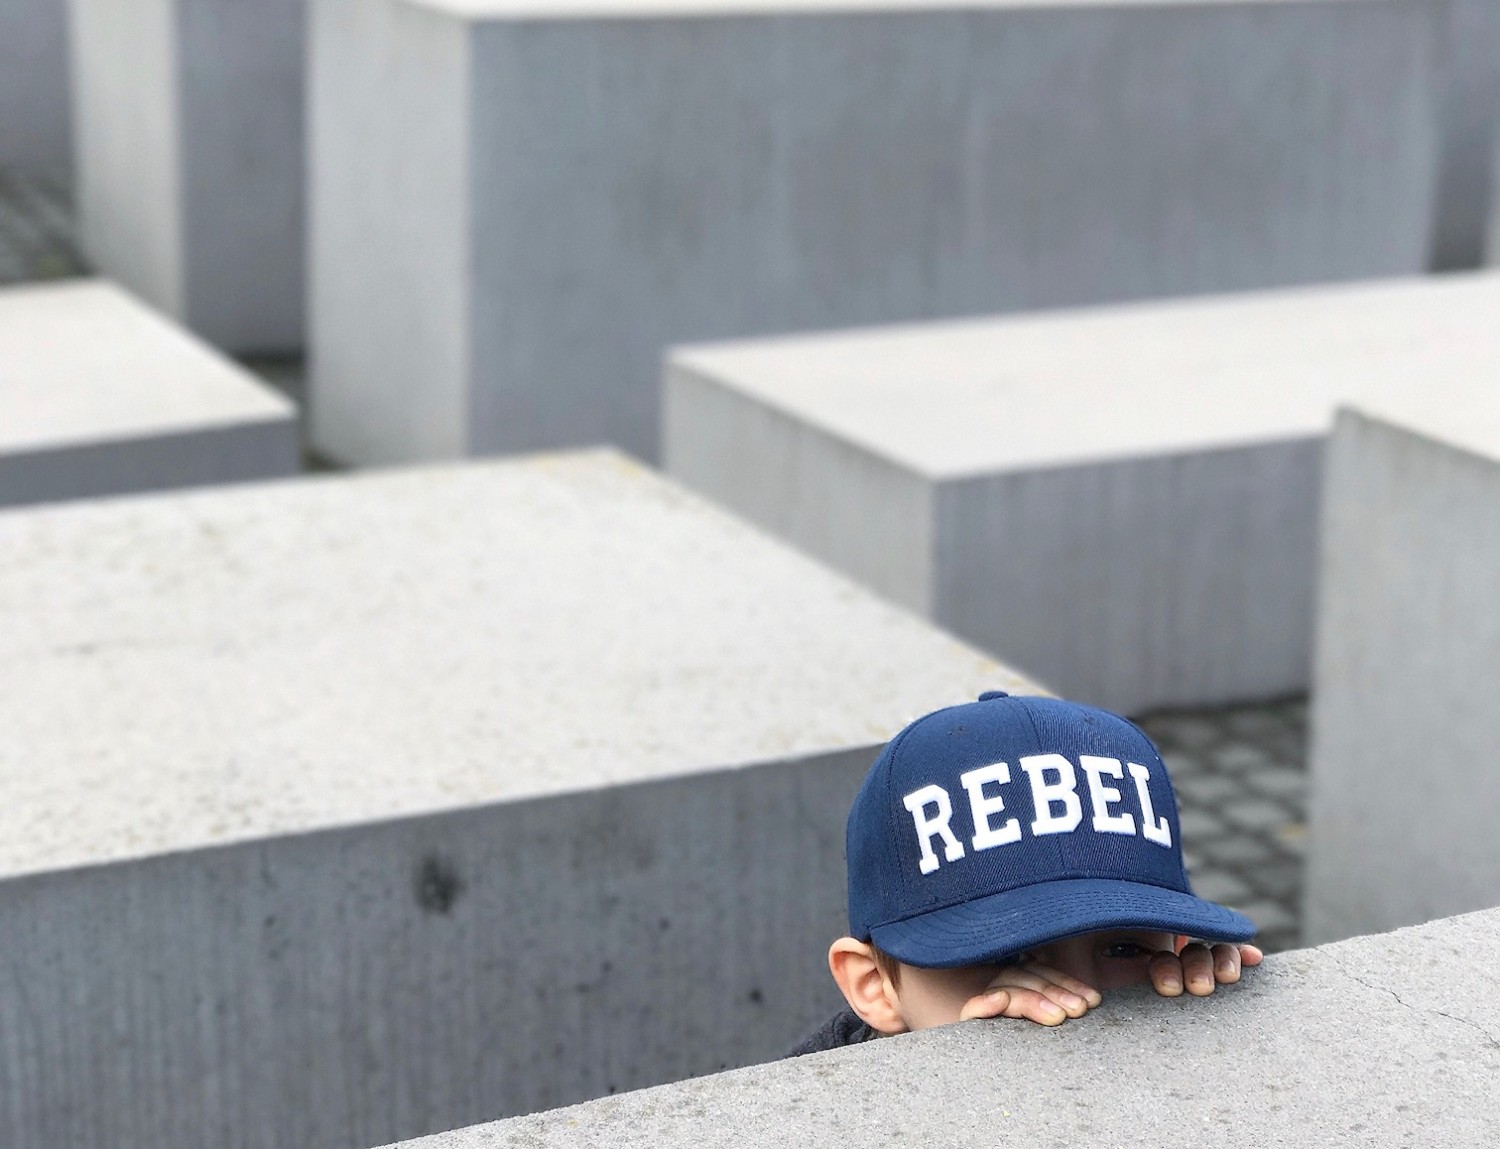 Gemmeleg ved mindesmærket for de døde jøder under 2. verdenskrig. Gemmeleg vil vist være de fleste børns tanke, når de ser det særlige og smukke monument.